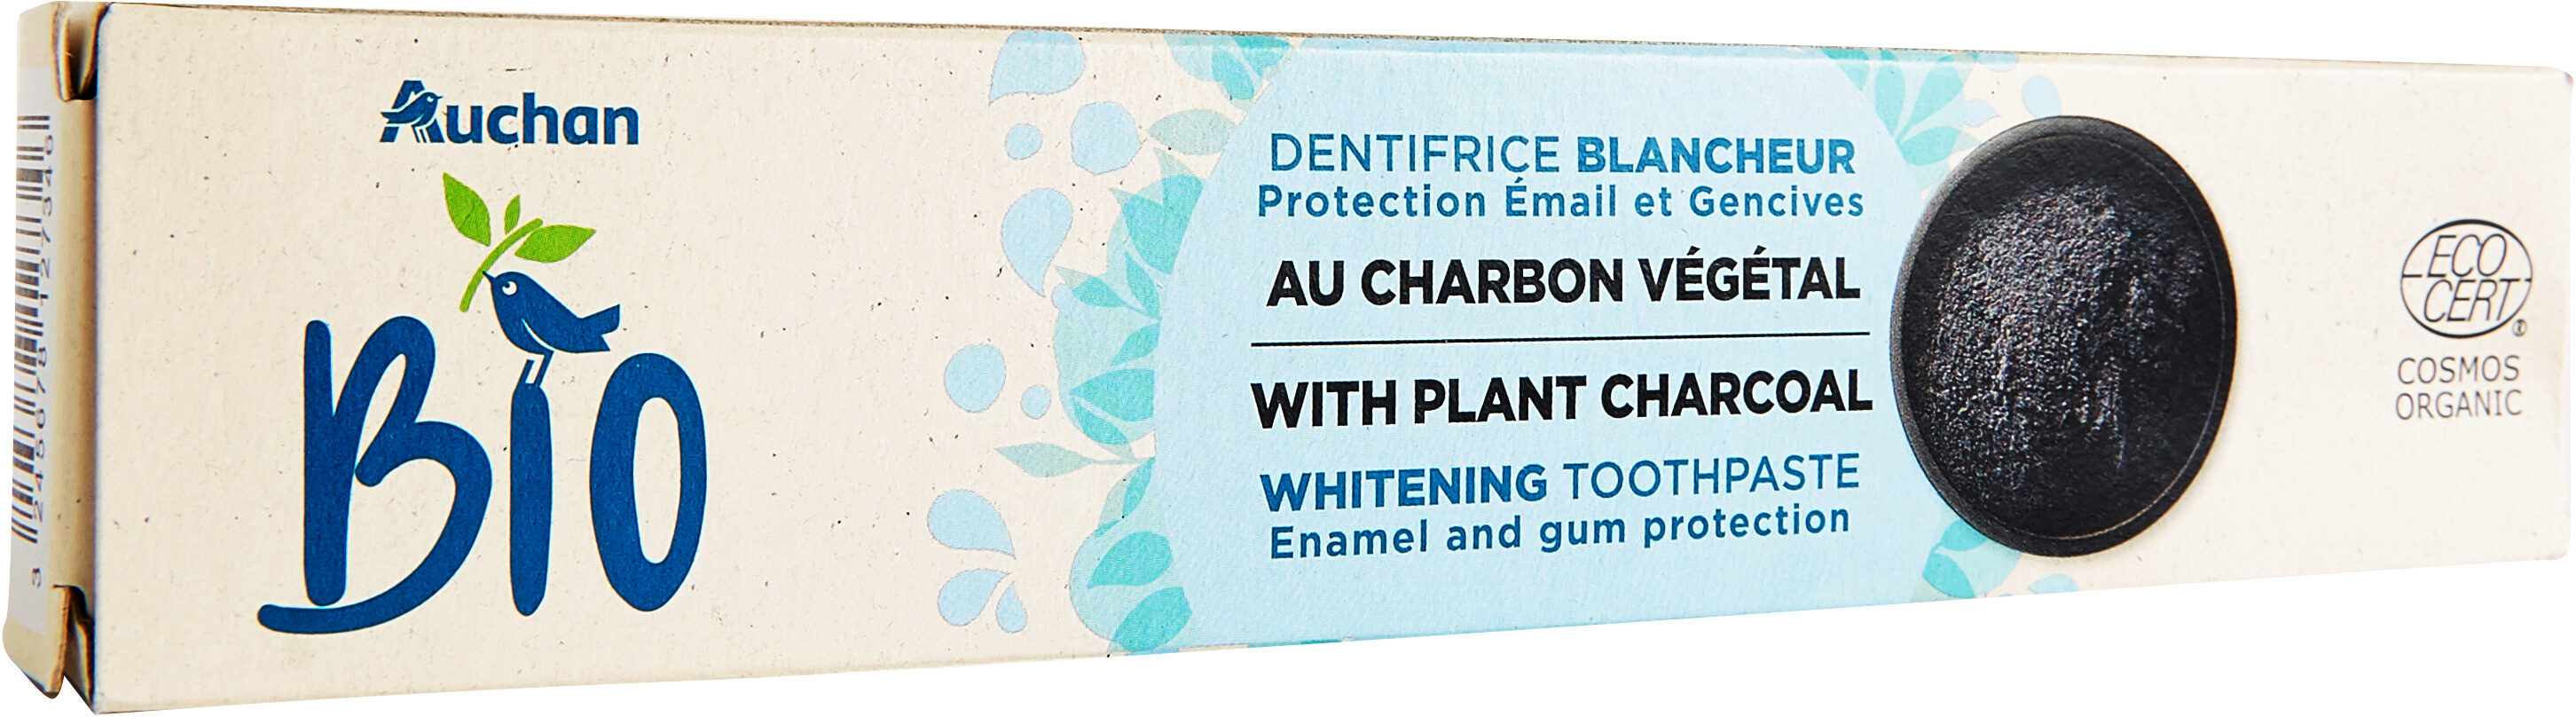 Dentifrice blancheur au charbon vegetal - Produit - fr